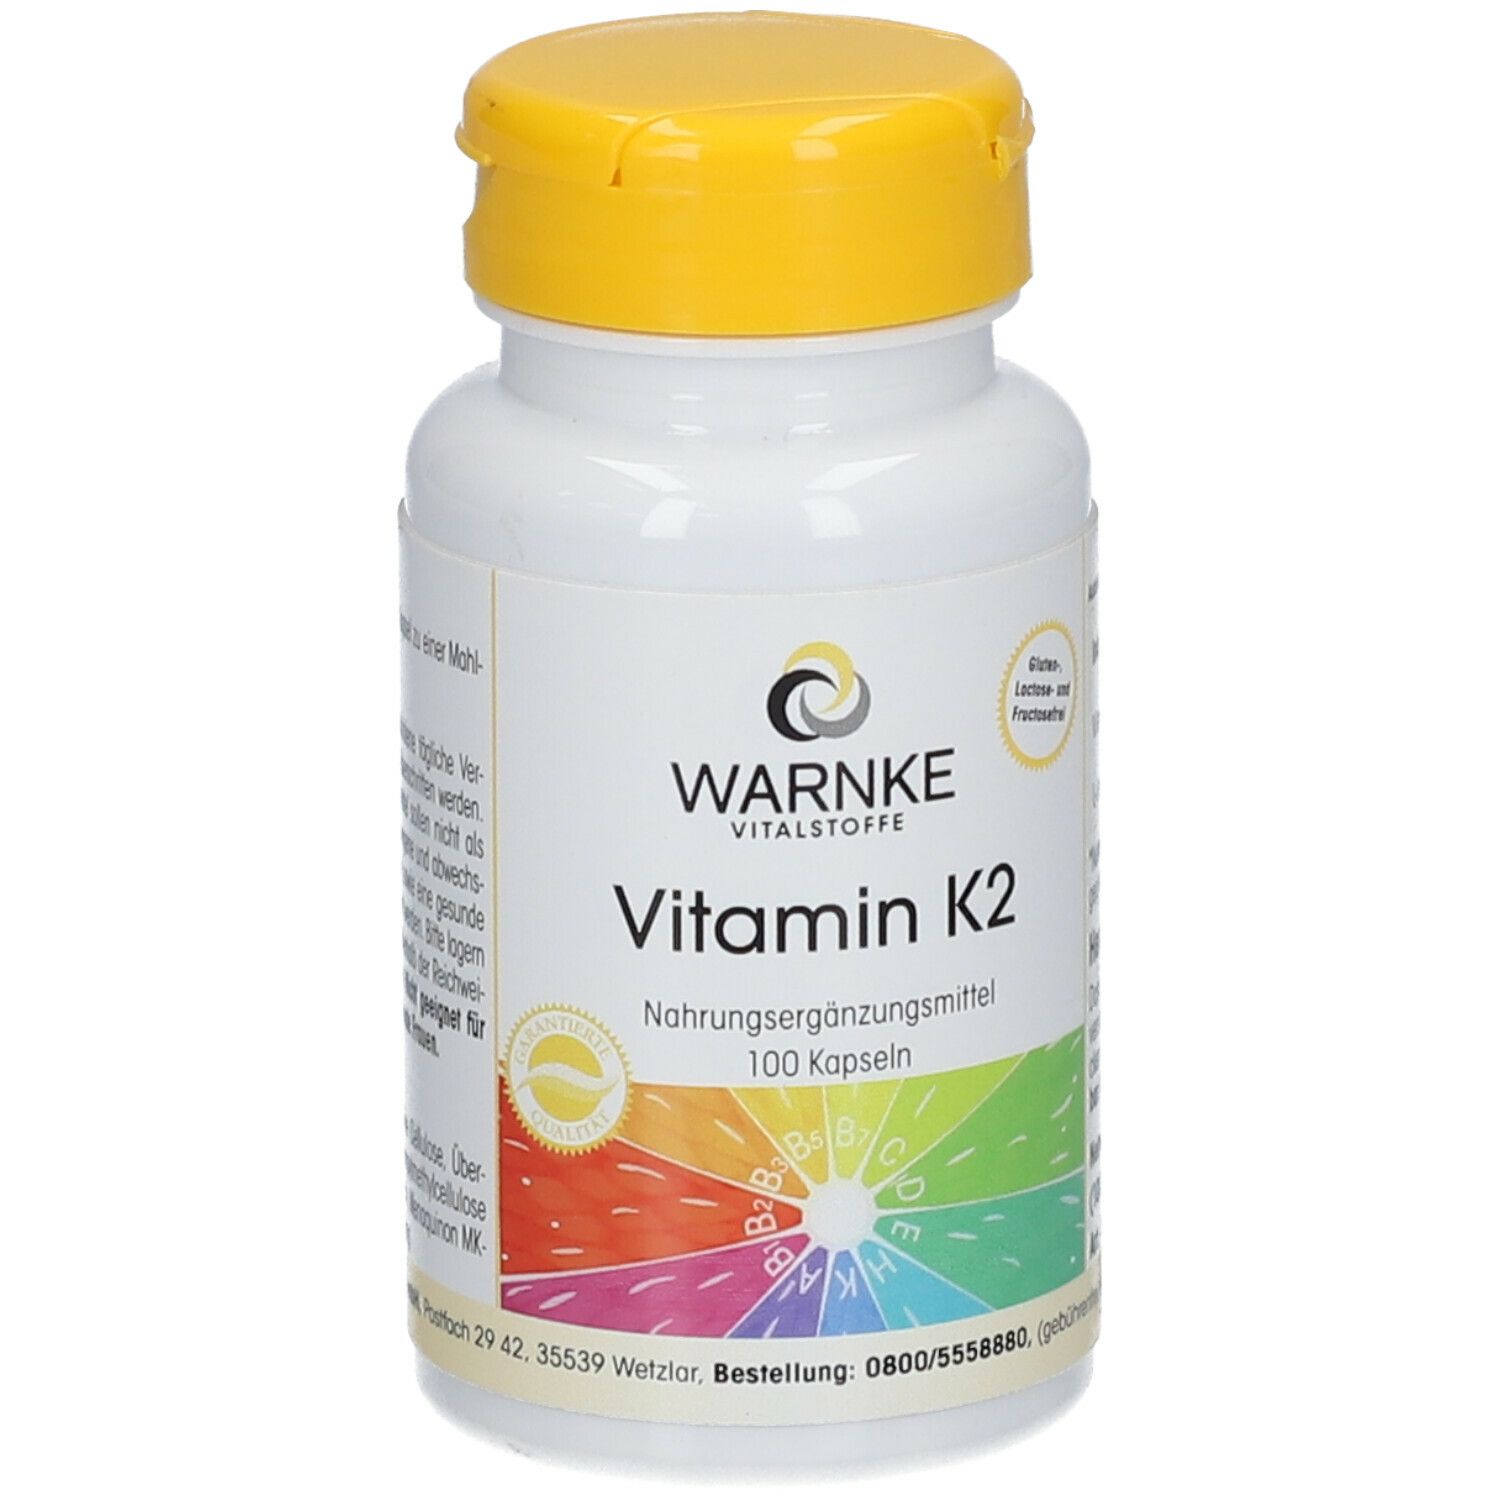 Vitamin K2